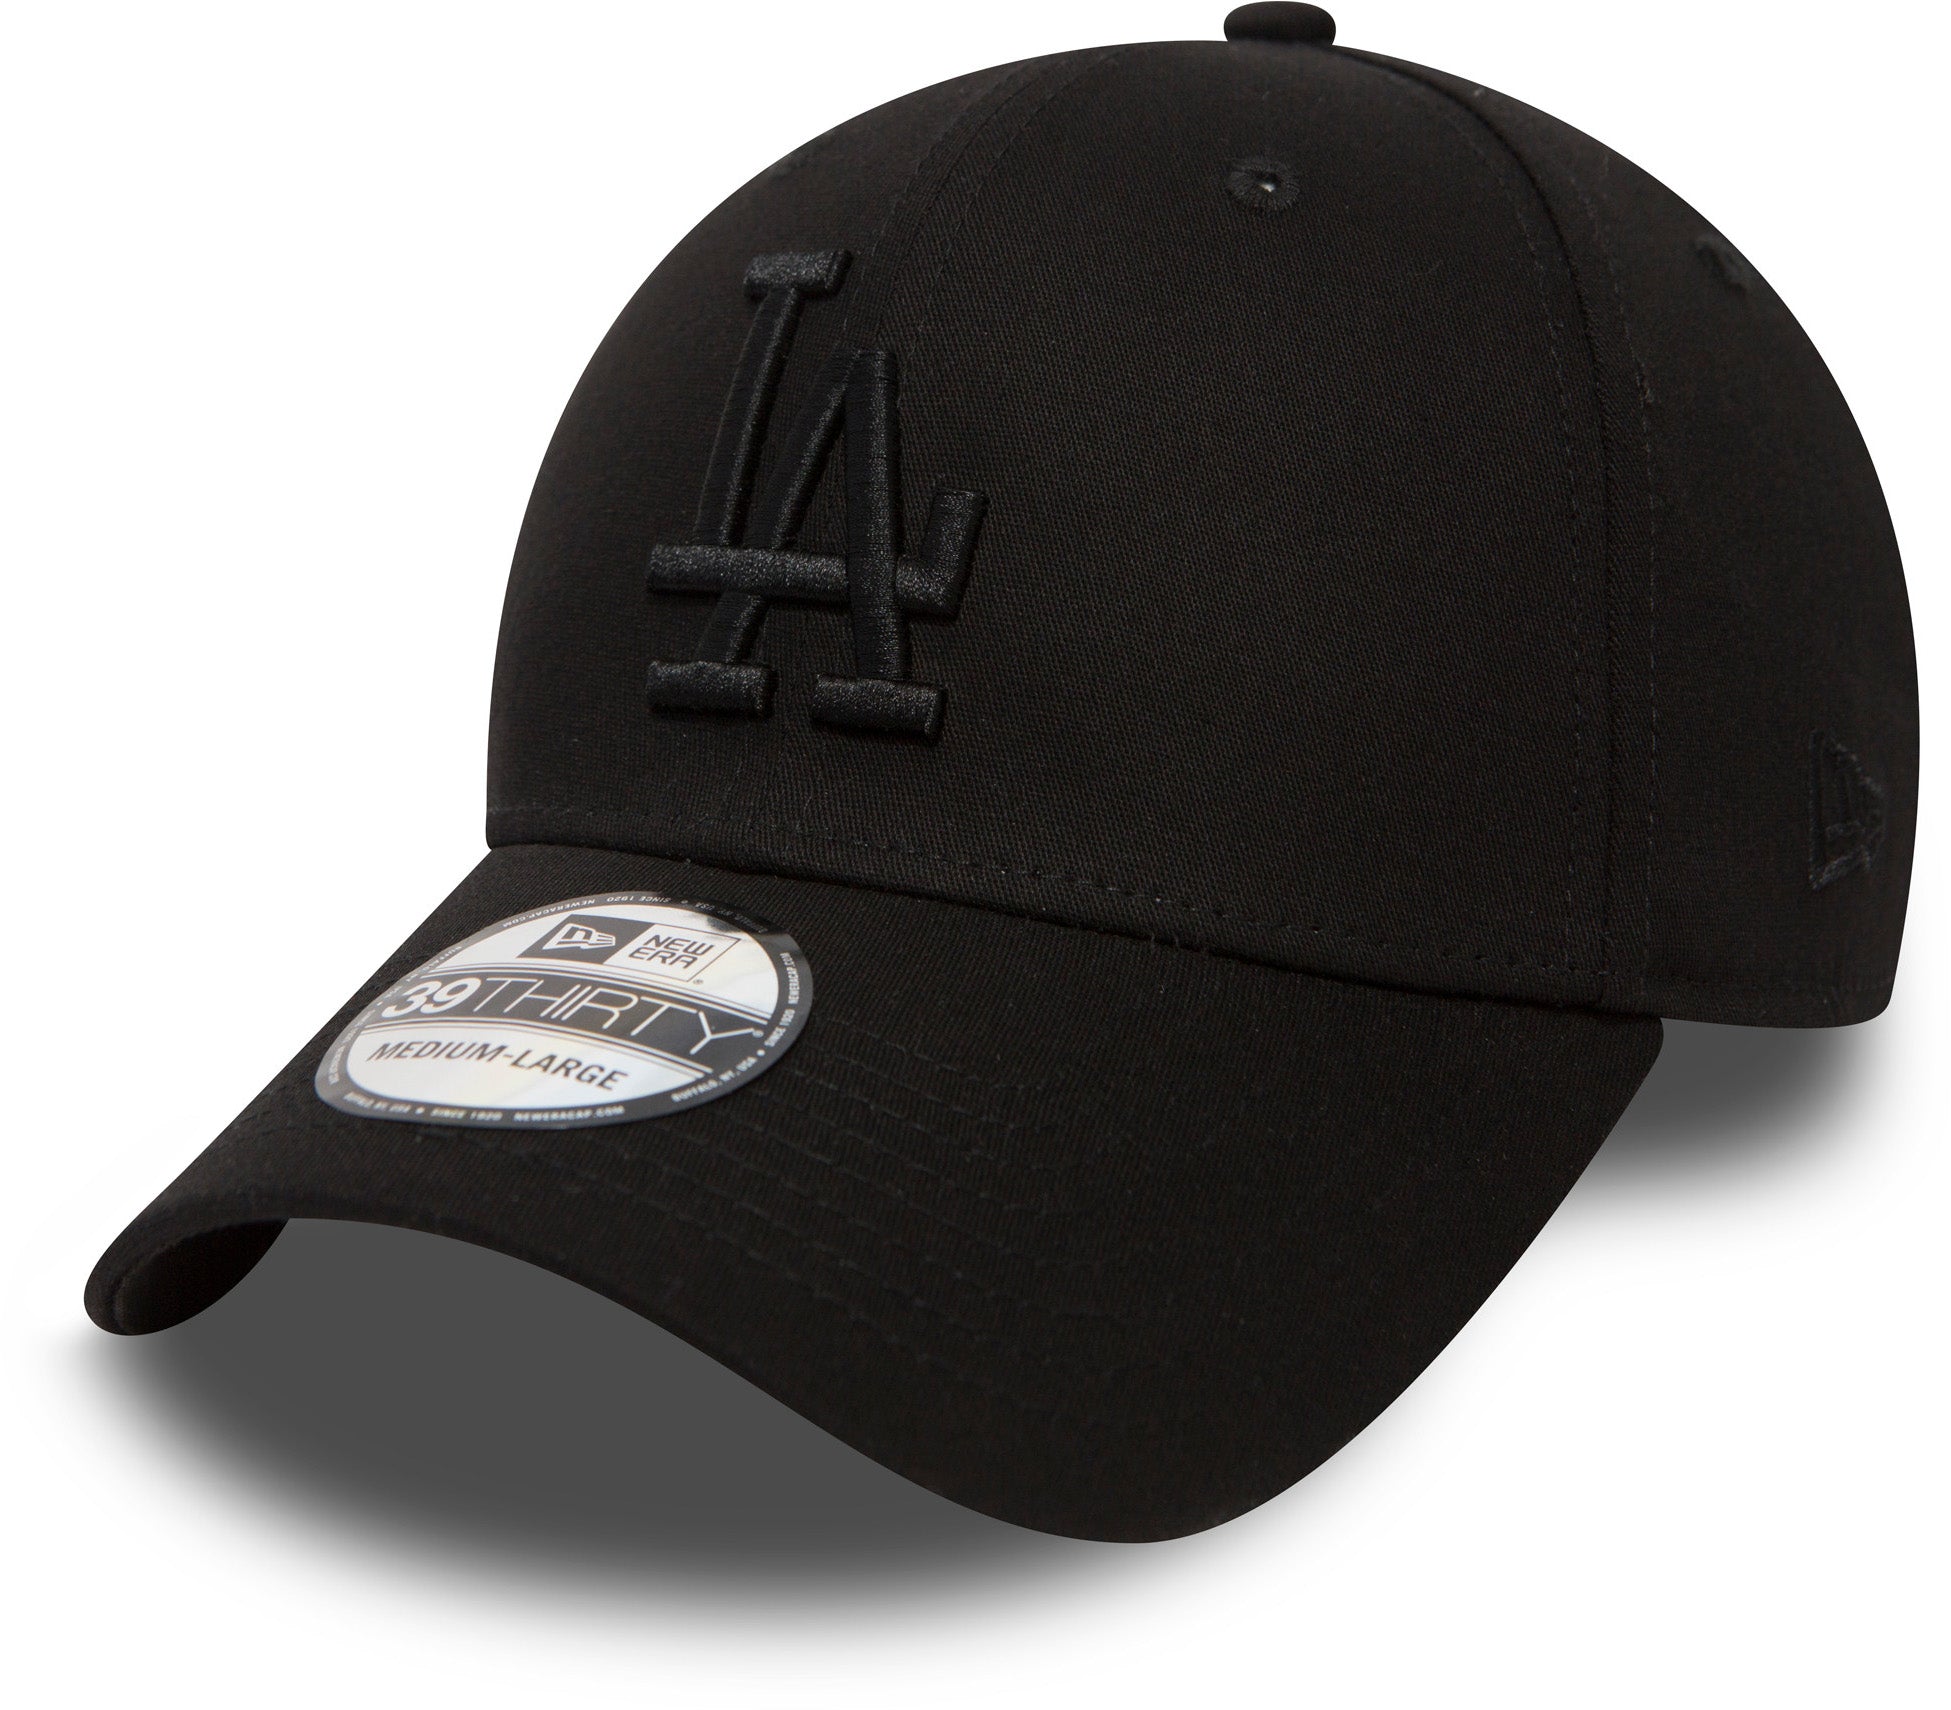 New Era LOS ANGELES DODGERS BASEBALL CAP